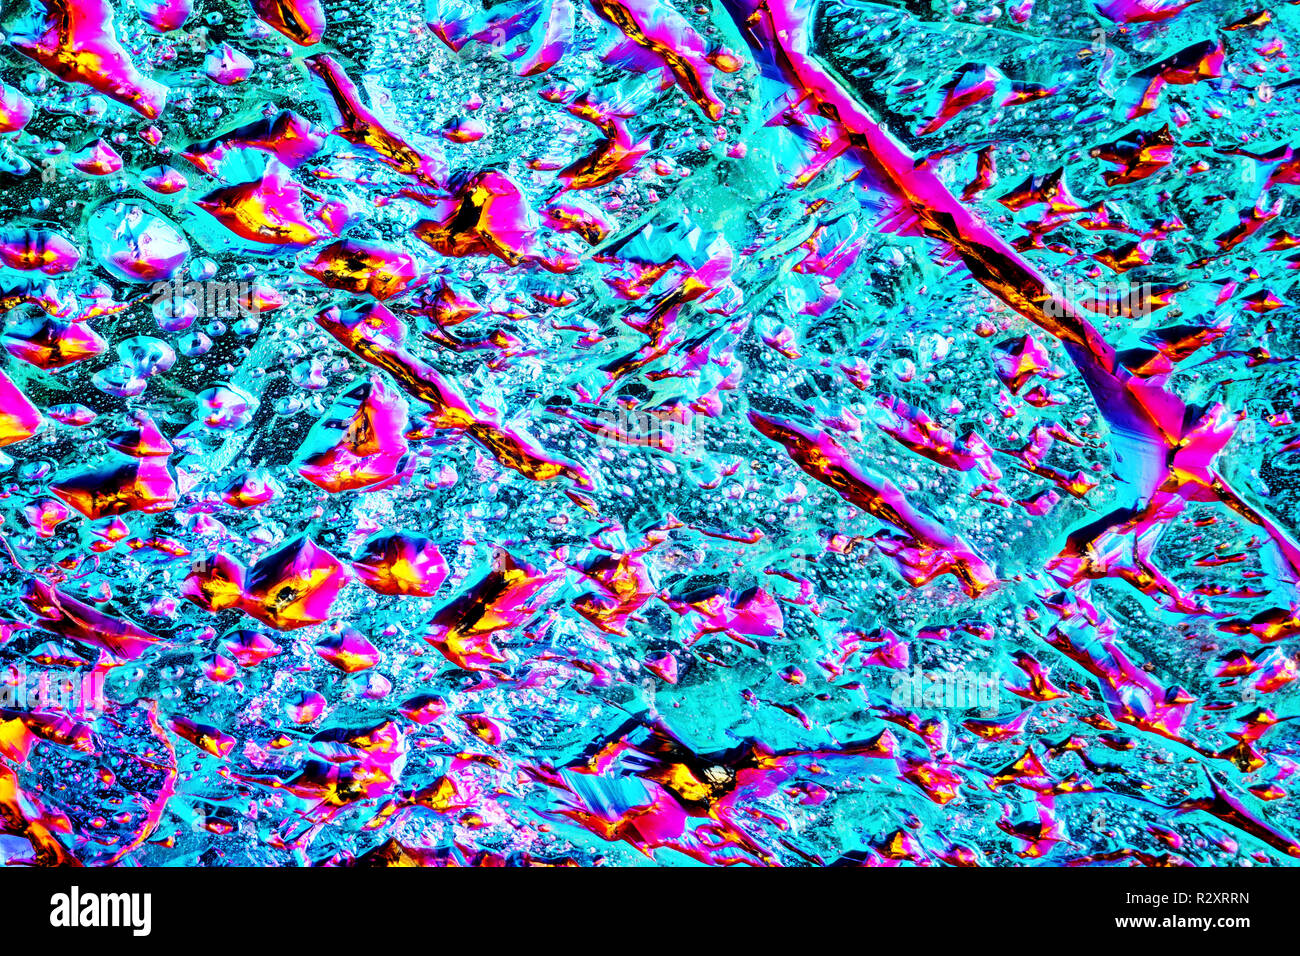 Extreme précise et détaillée rainbow titane quartz détail cluster aura pris avec un objectif macro avec une grande profondeur de champ. Banque D'Images